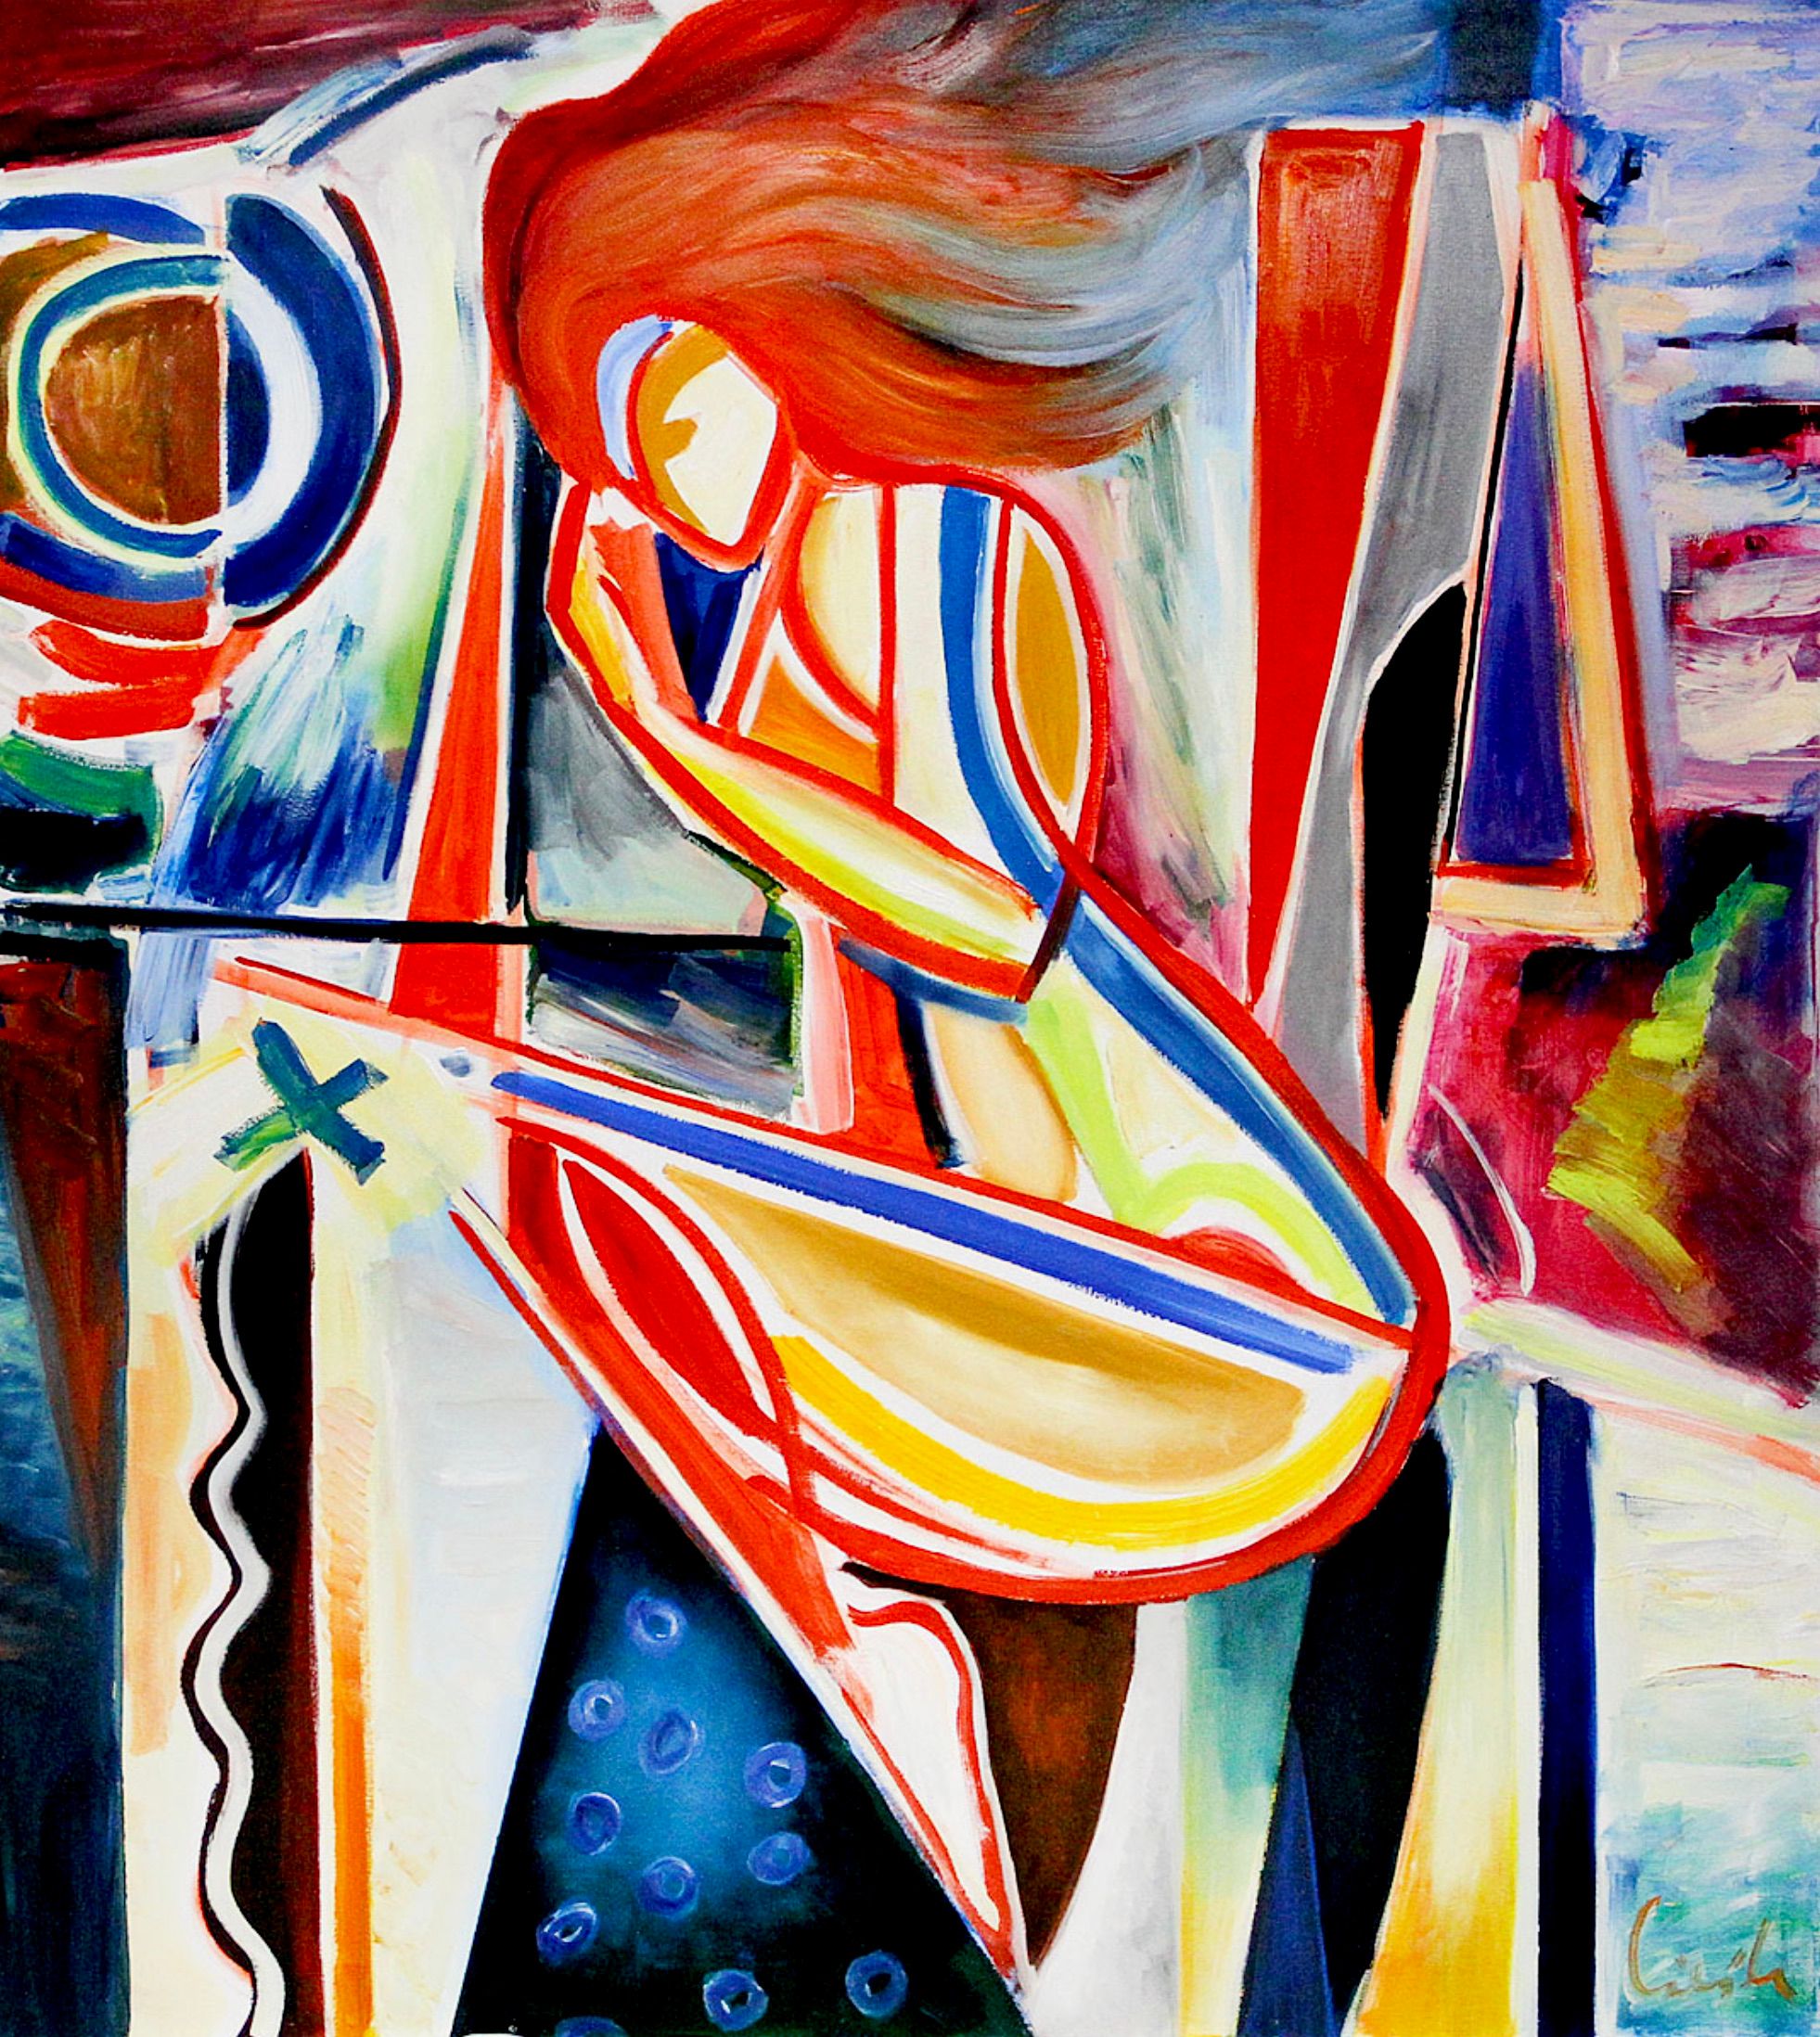 MECESLA Maciej Cieśla, "Au lit", peinture abstraite d'une jeune fille aux formes géométriques et aux combinaisons de couleurs agressives avec des accents rouges.